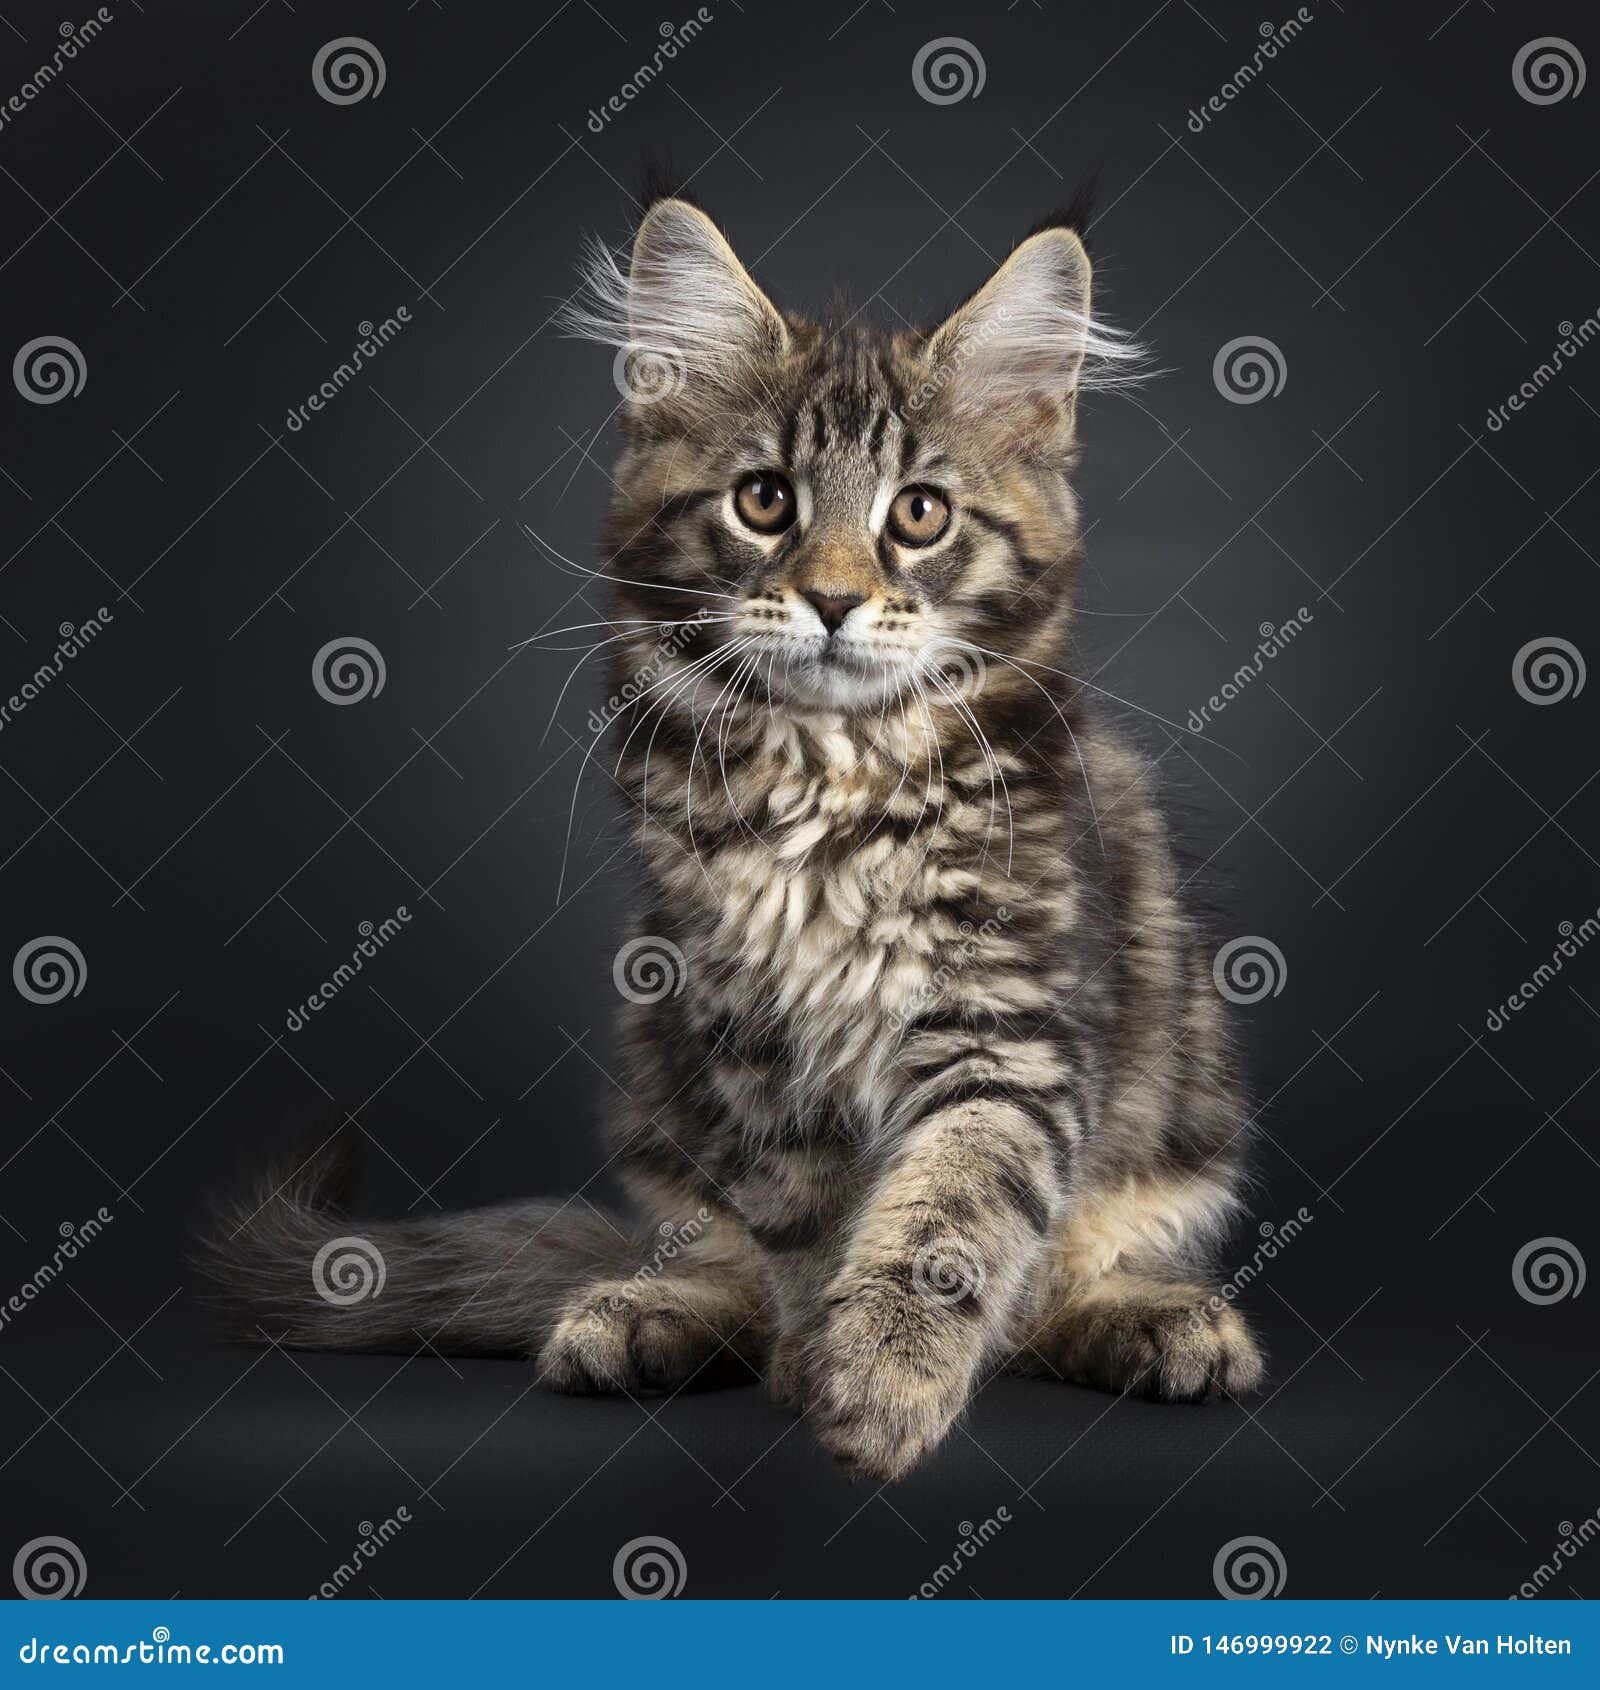 oortelefoon verklaren geestelijke gezondheid Black Tabby Maine Coon Kitten on Black Stock Photo - Image of pedigree,  lens: 146999922